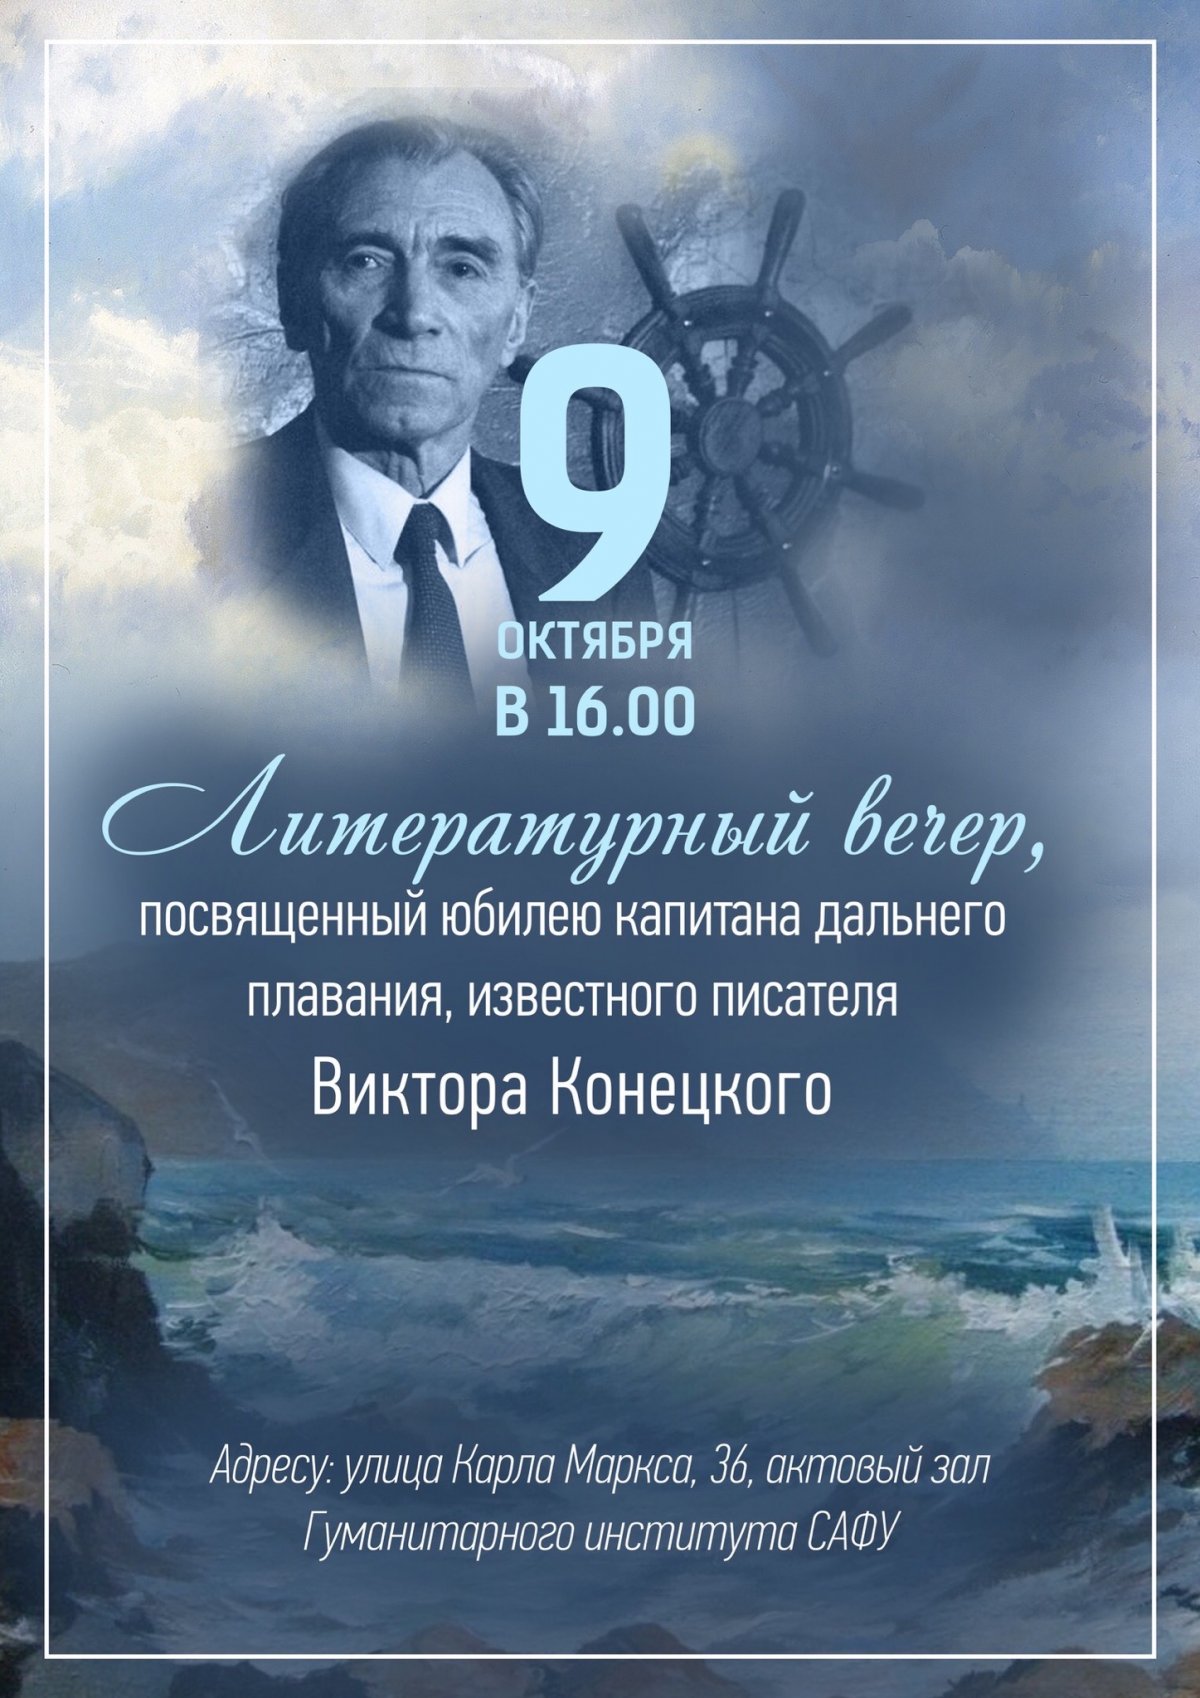 📚 Приглашаем всех желающих на литературный вечер, посвящённый юбилею Виктора Конецкого!